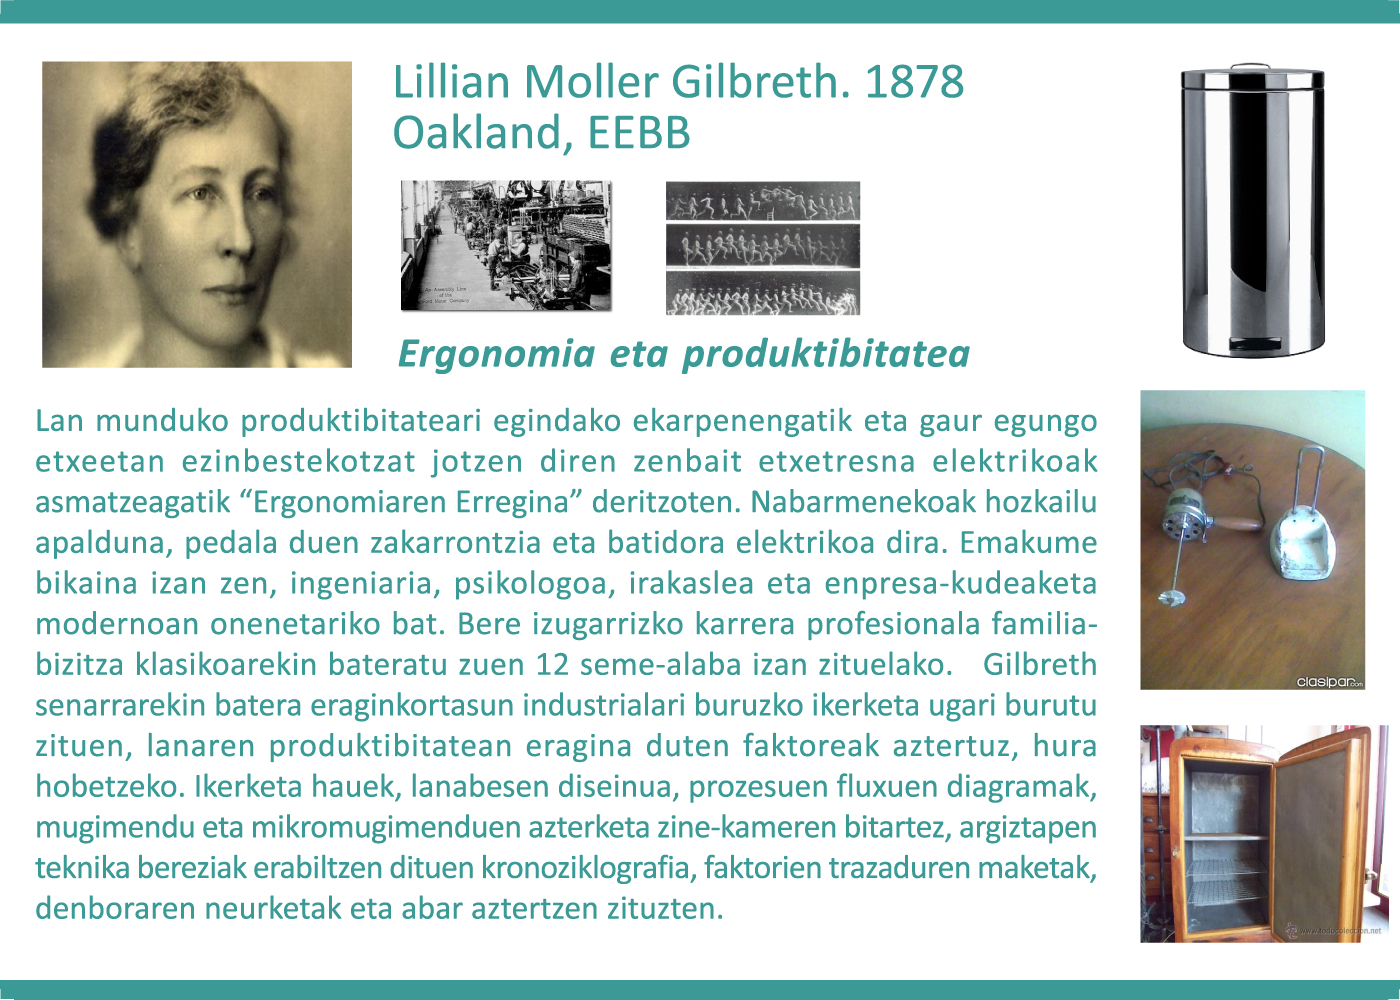 Lilian Moller Gilbreth, 1878. Ergonomia eta produktibitatea